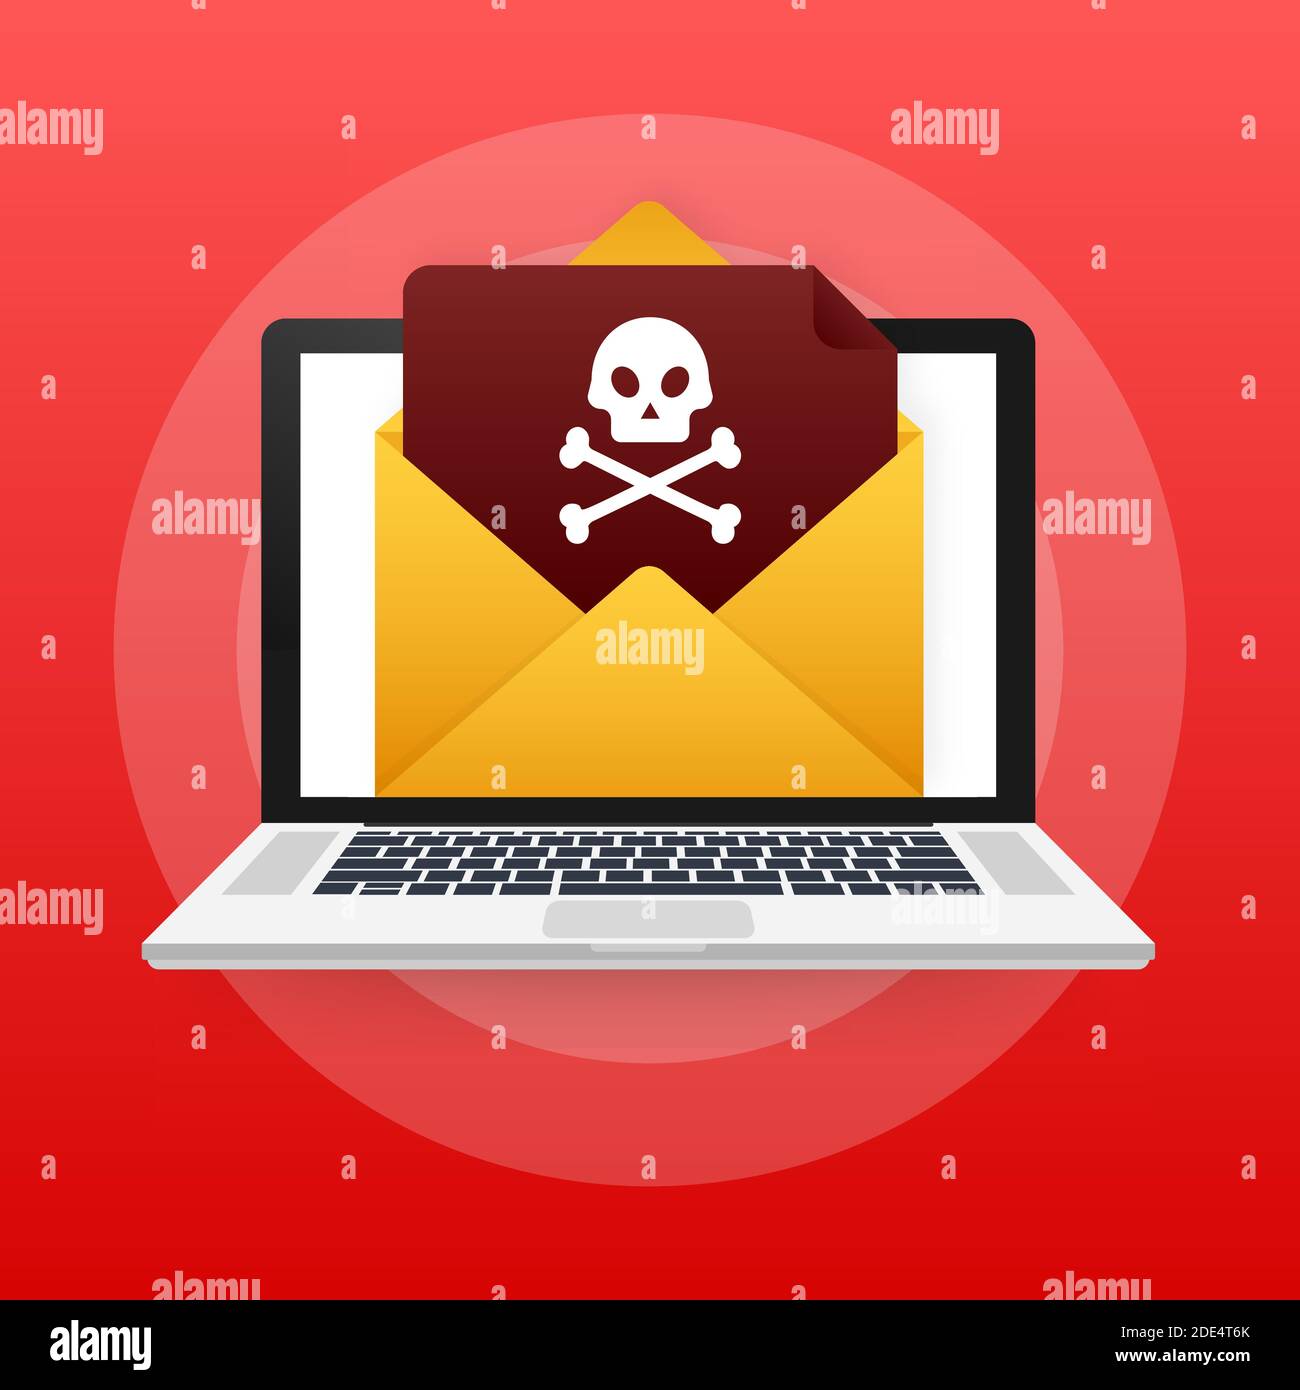 Roter E-Mail-Virus. Computerbildschirm. Virus, Piraterie, Hacking und Sicherheit, Schutz. Vektorgrafik. Stock Vektor